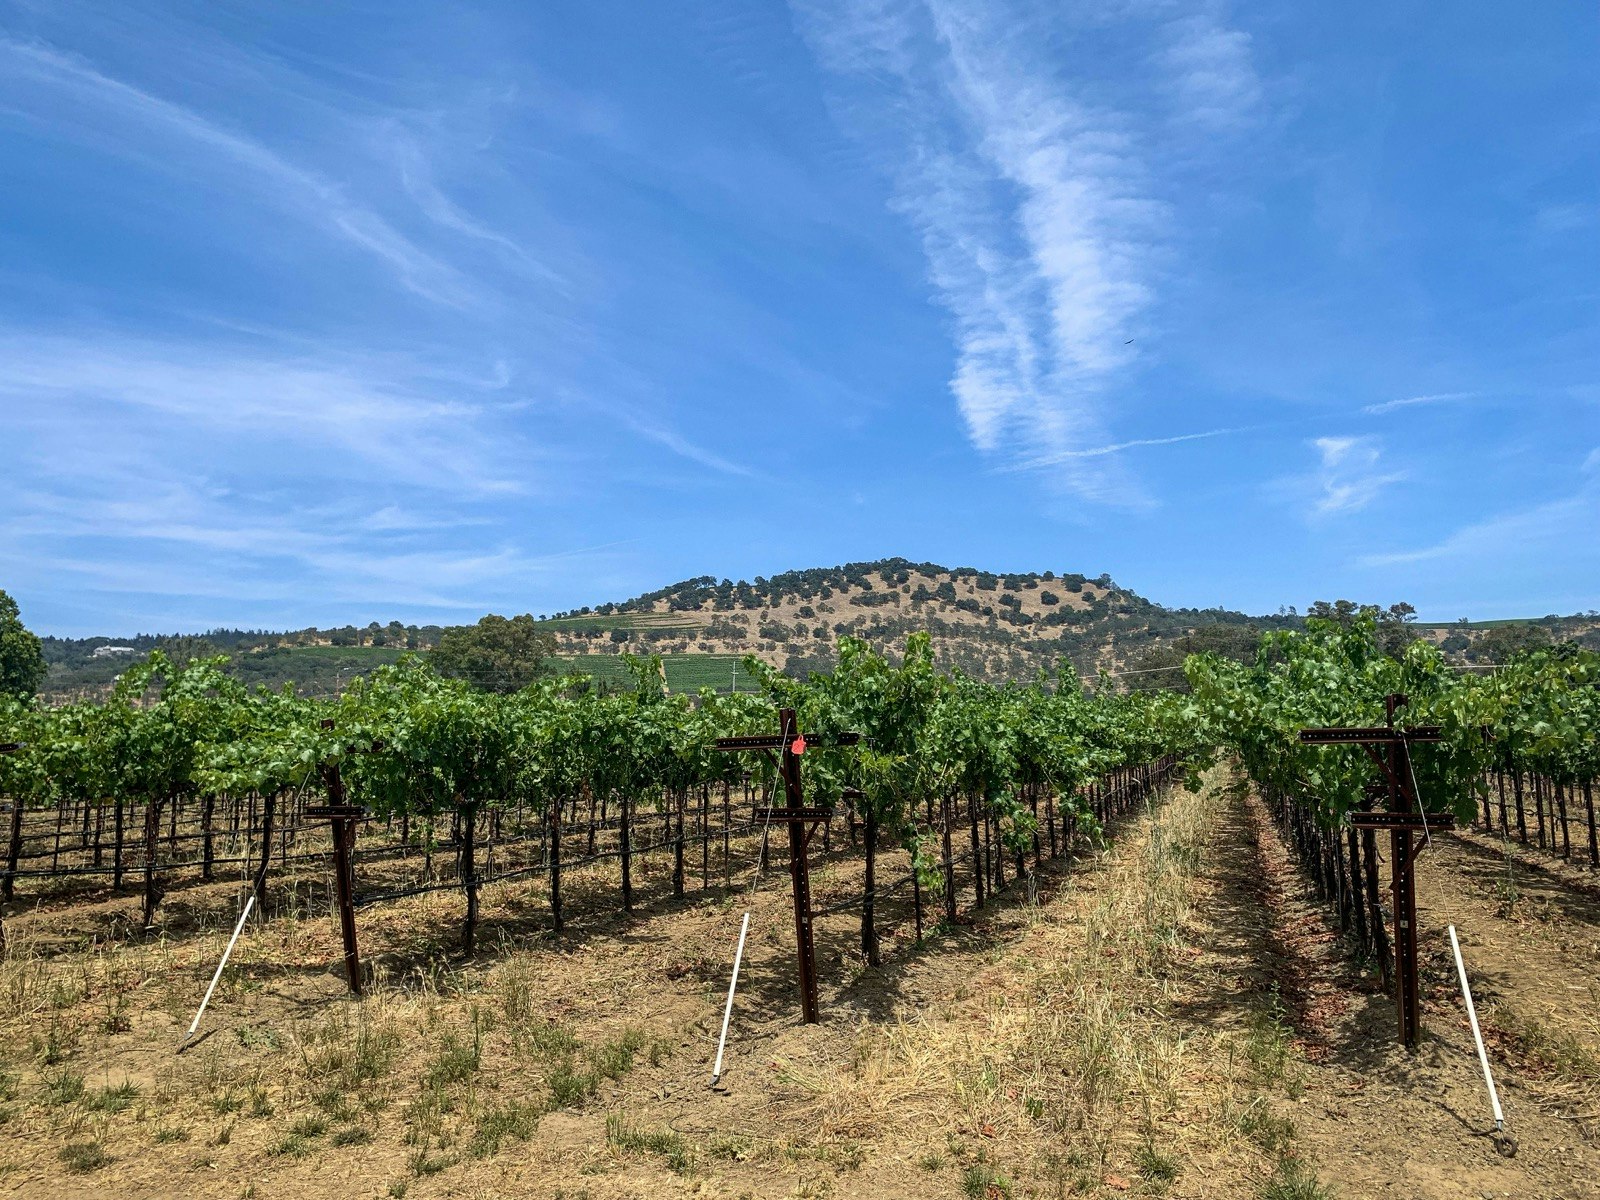 Rader av druvor under en blå himmel i Kaliforniens vinland